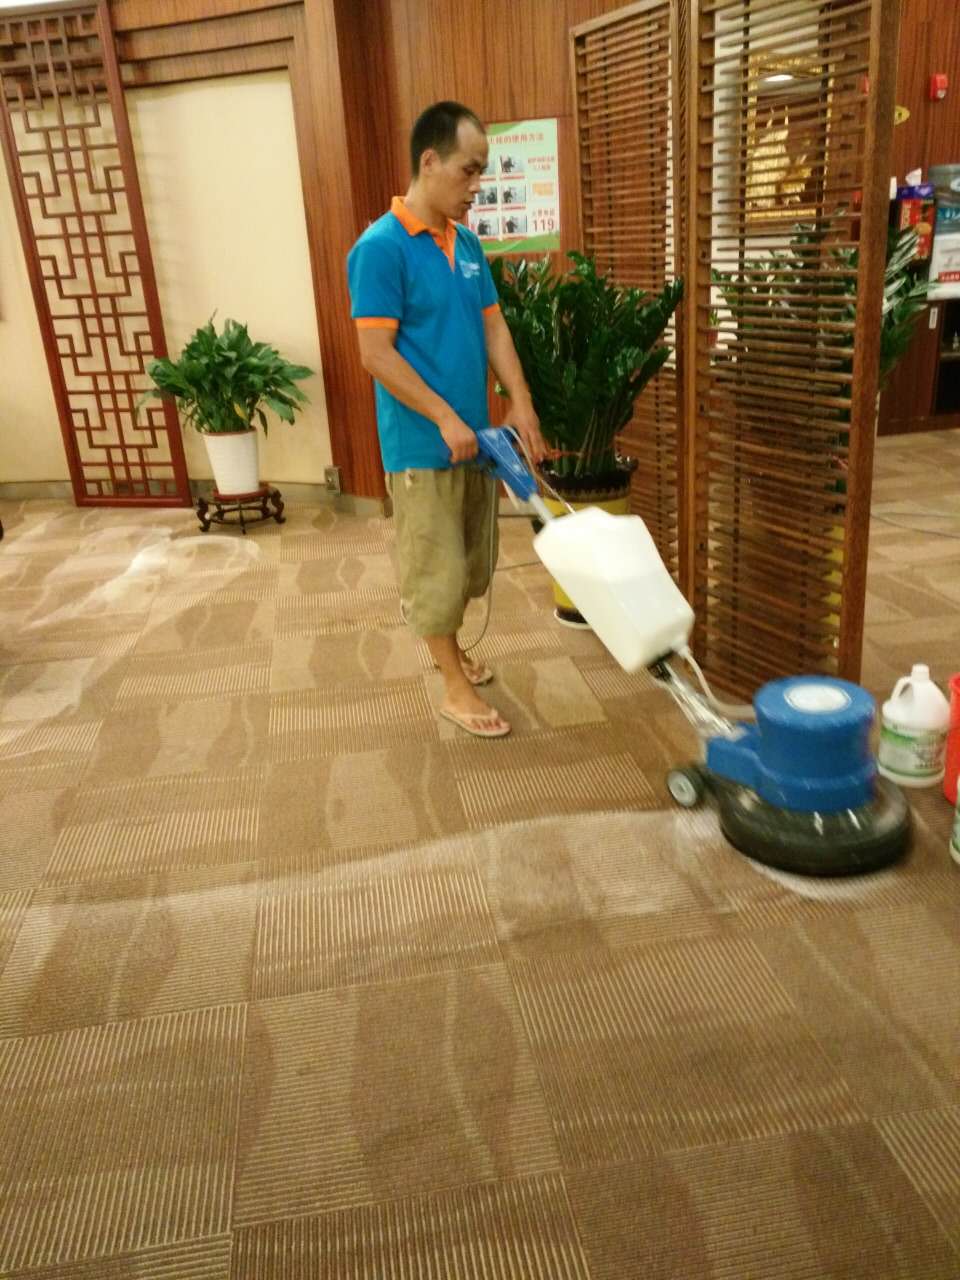 广州地毯清洗 广州专业地毯清洗公司 广州地毯清洗哪家便宜